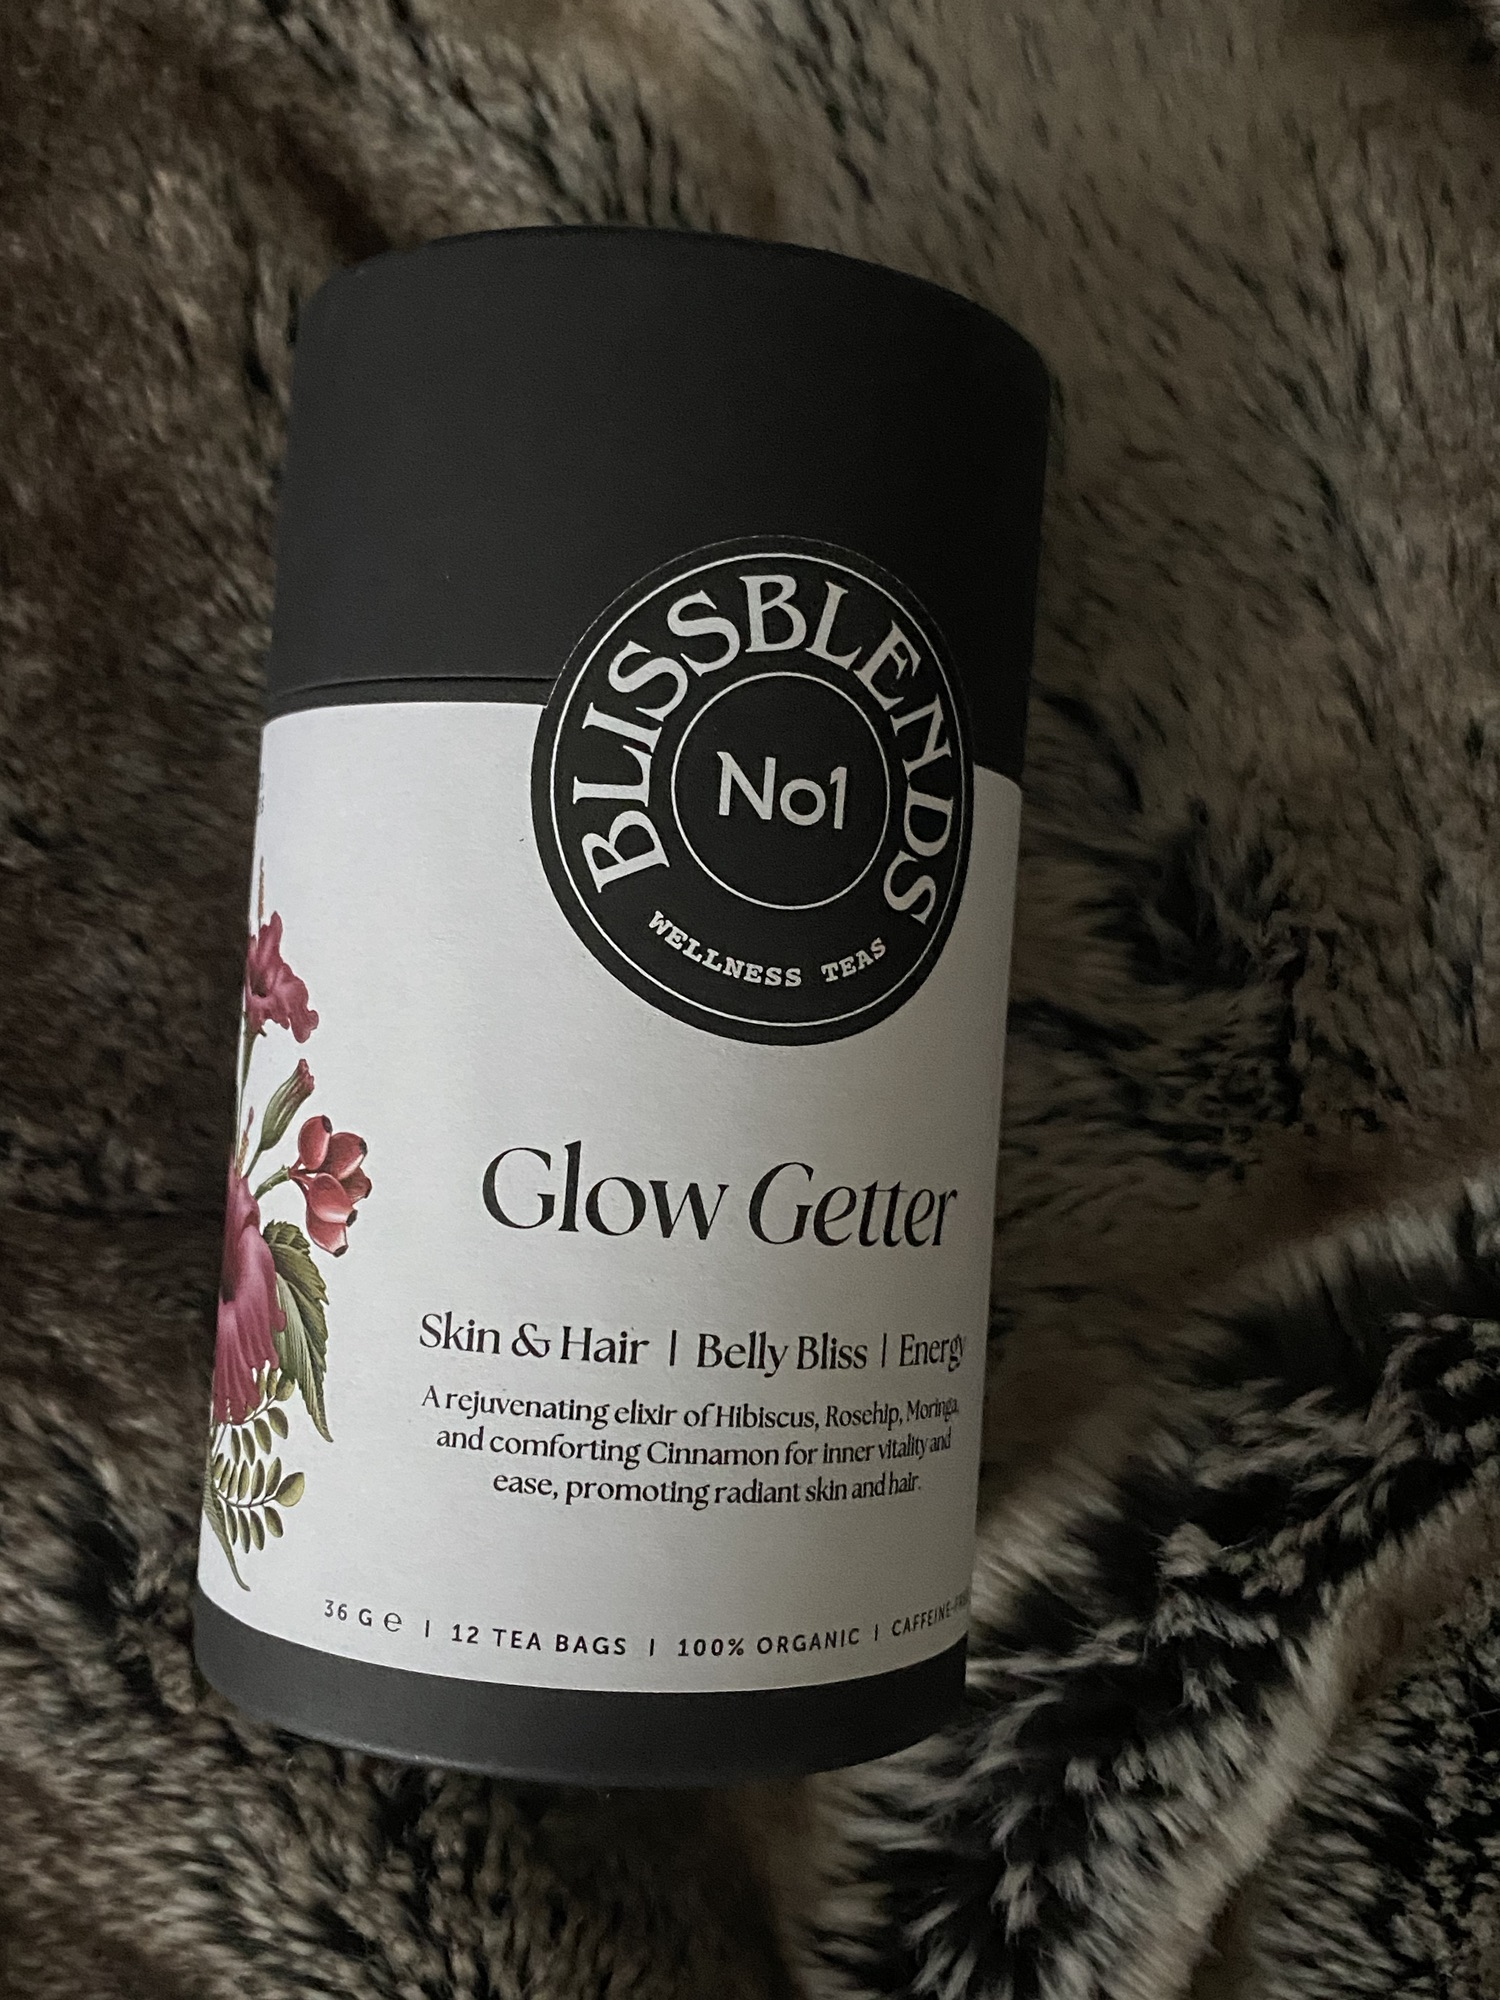 Bliss blends Glow Getter Skin & Hair Belly Bliss Energy